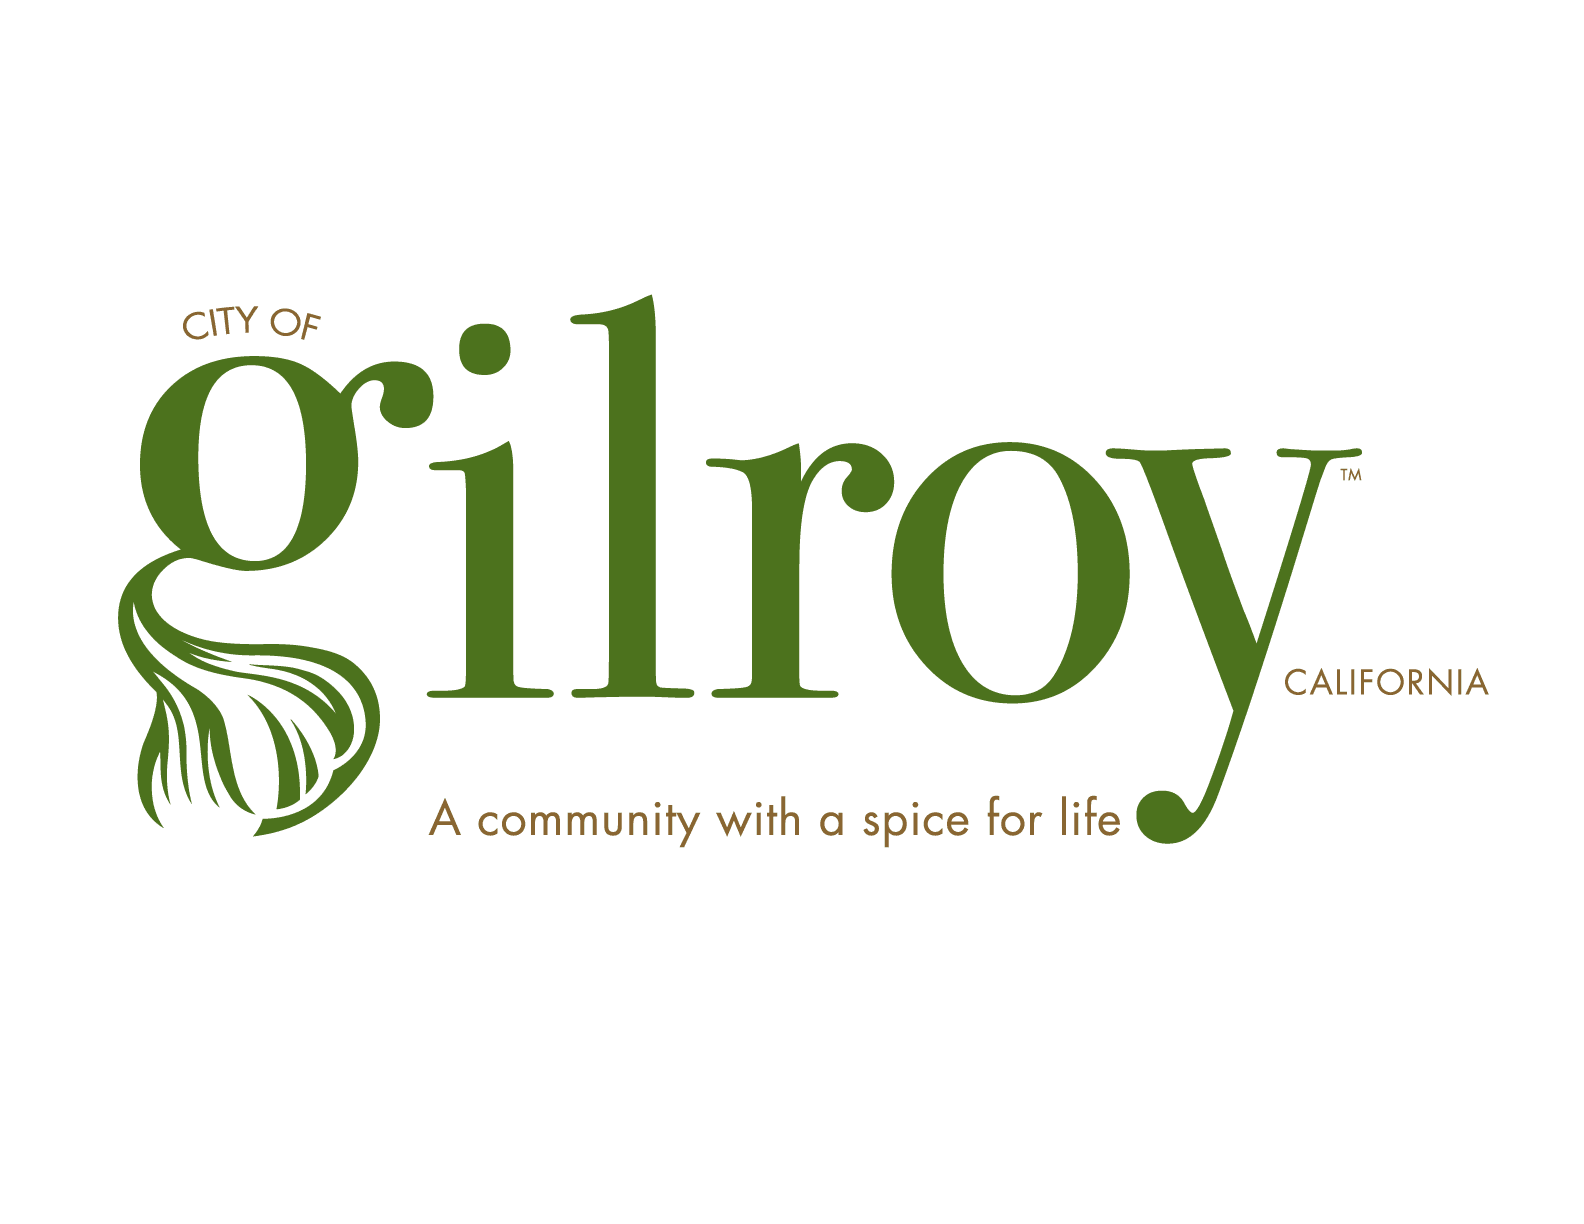 City of Gilroy California Logo